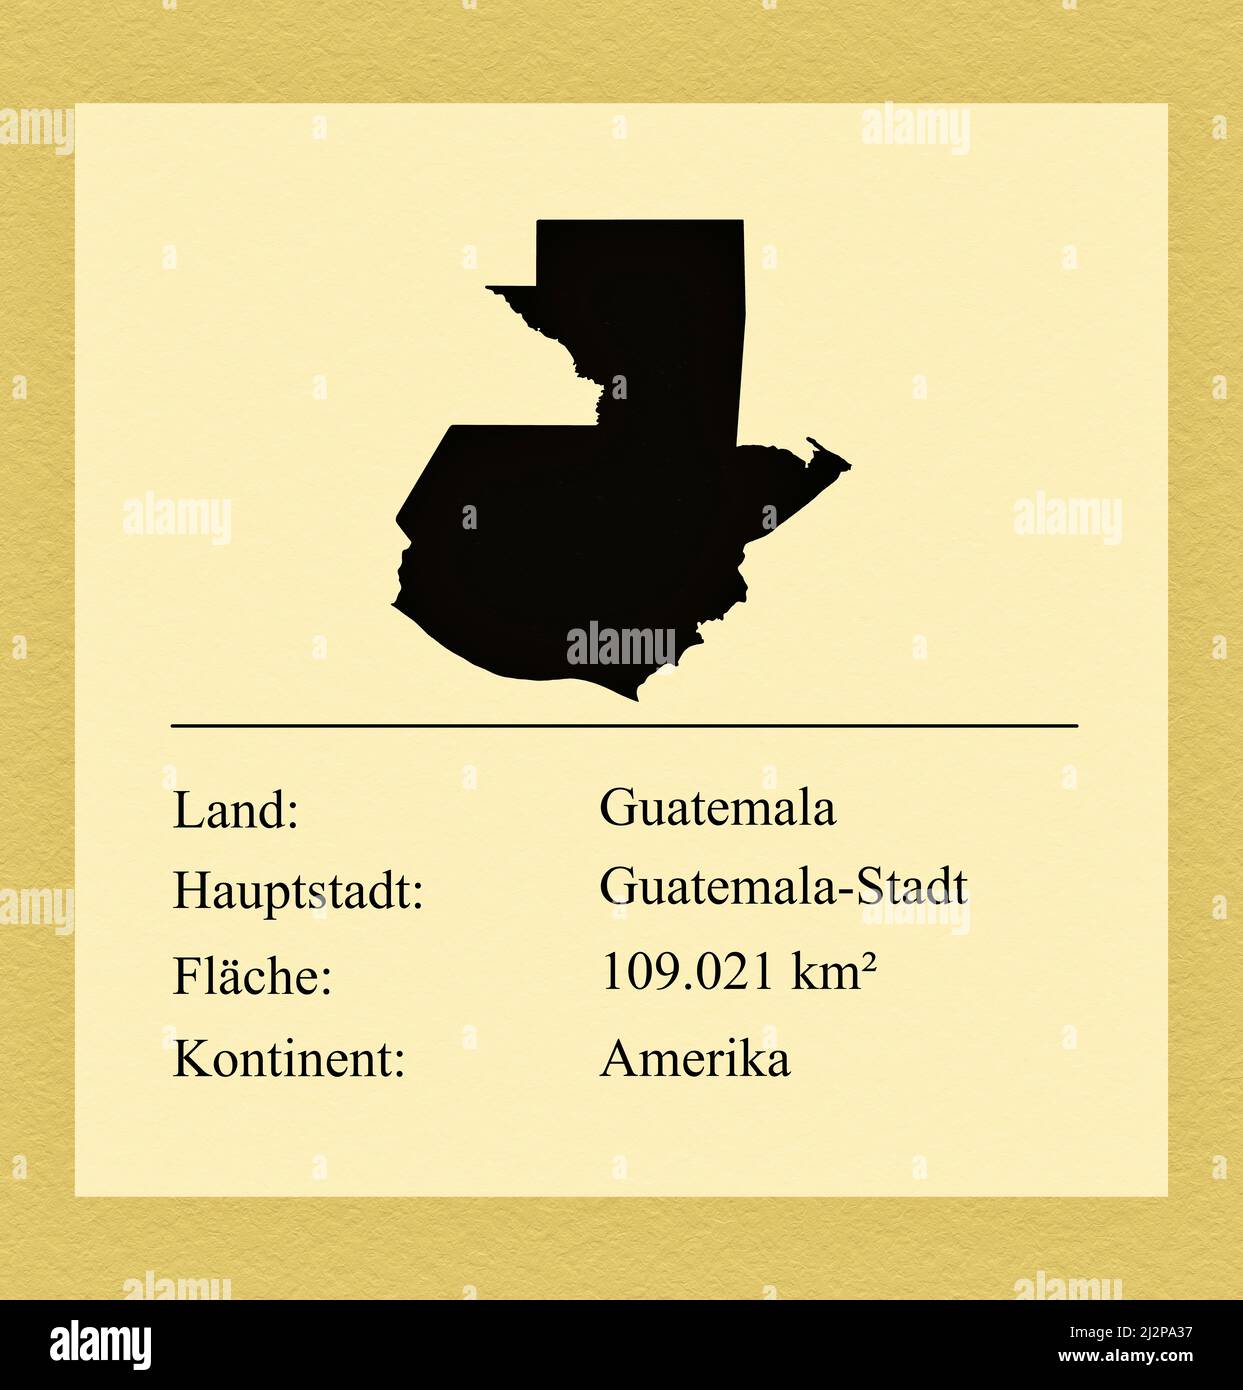 Umrisse des Landes Guatemala, darunter ein kleiner Steckbrief mit Ländernamen, Hauptstadt, Fläche und Kontinent Stock Photo